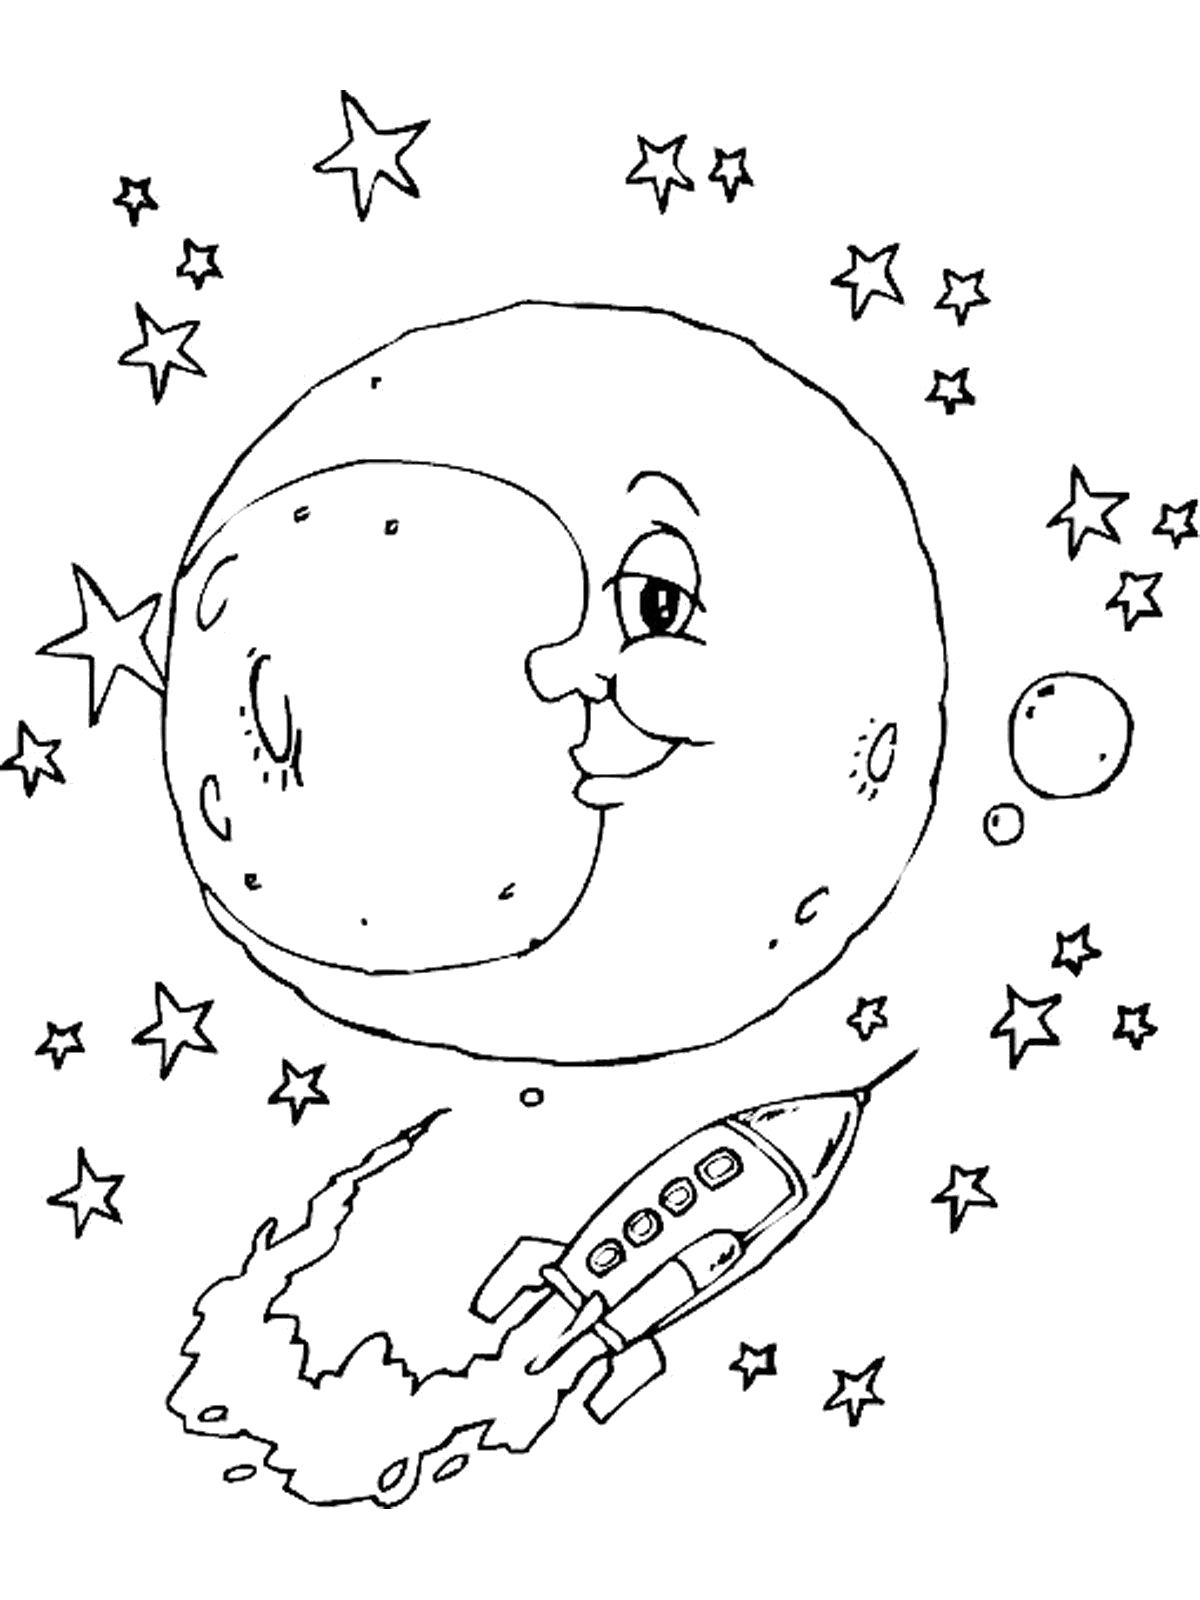 Скачать бесплатные раскраски со звёздами. Раскраски для детей с кометами. Скачать бесплатные раскраски со звёздами. Раскраски детские окружающий мир. Раскраски для детей с кометами. Раскраски для детей космос. Бесплатные детские раскраски.